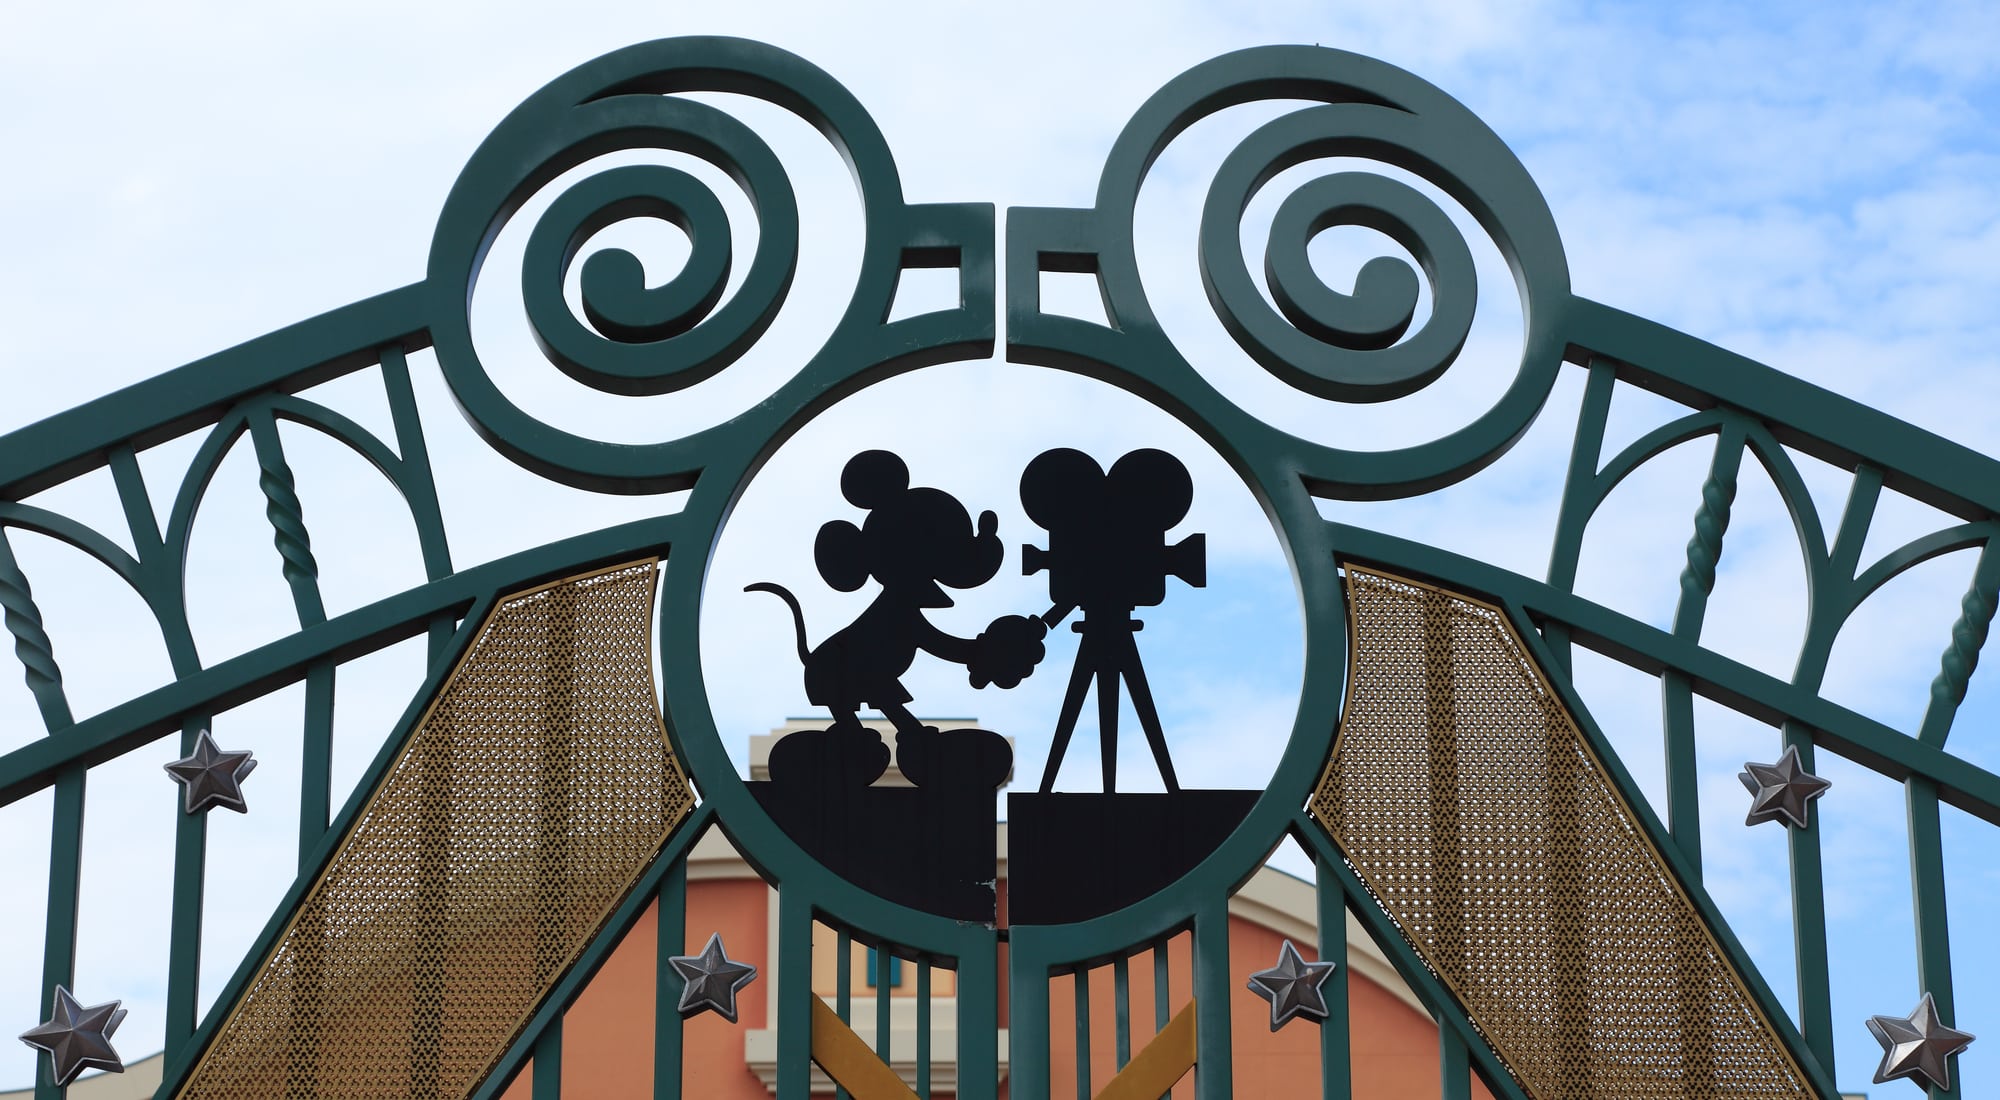 Biography of Walt Disney - Walt Disney Studios, Paris